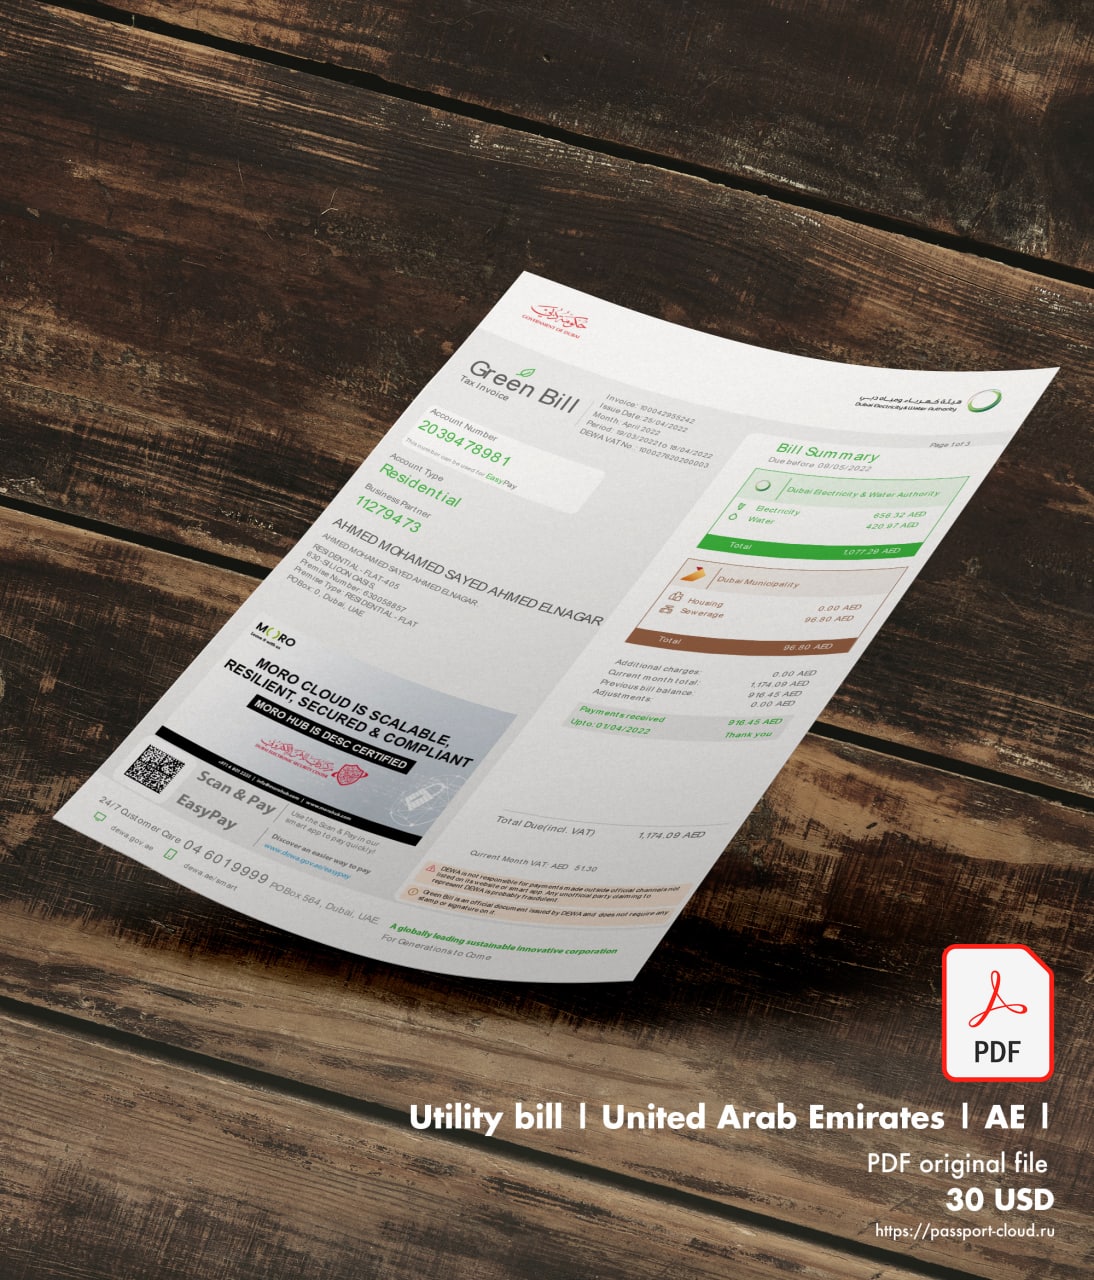 Utility bill | Green Bill | Emirates |1